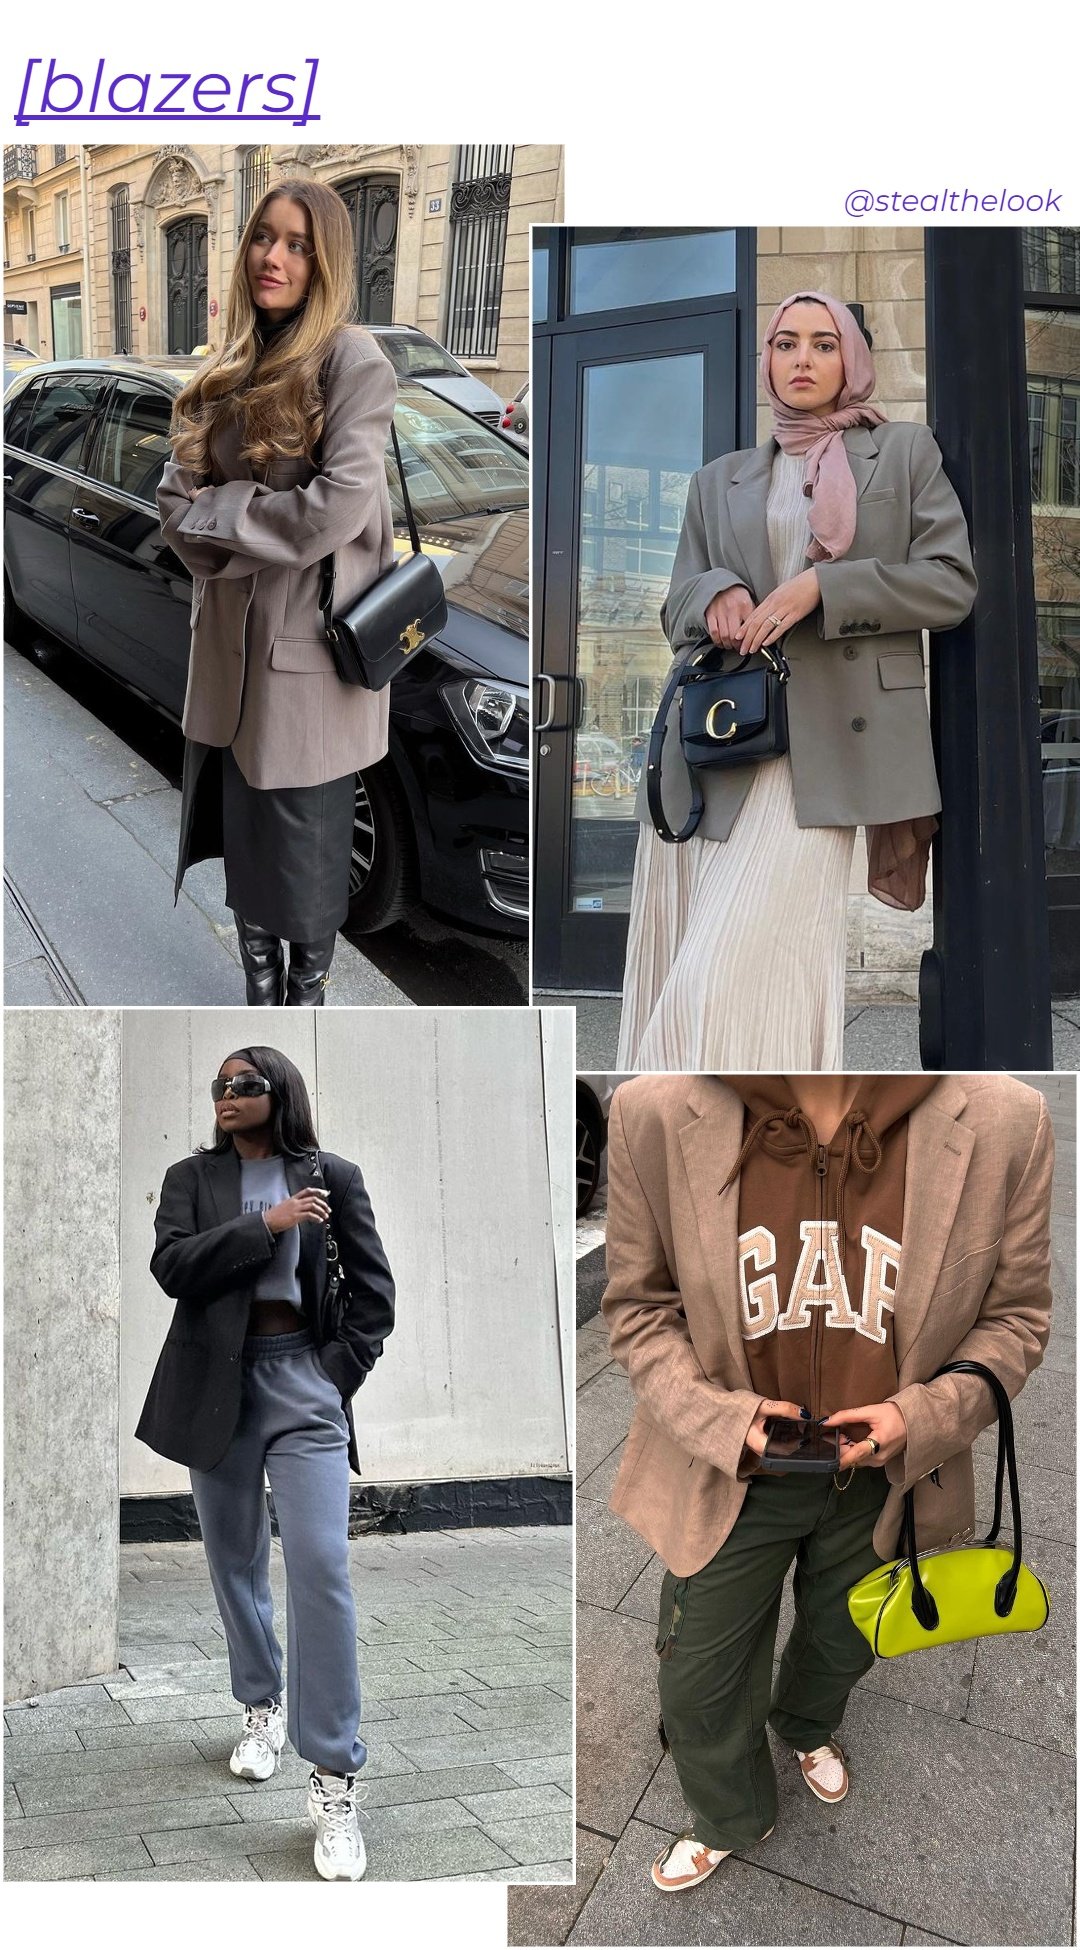 Ines Silva | @irisloveunicorns - blazers variados - casacos de inverno - inverno - arte com 4 mulheres diferentes usando diferentes blazers - https://stealthelook.com.br